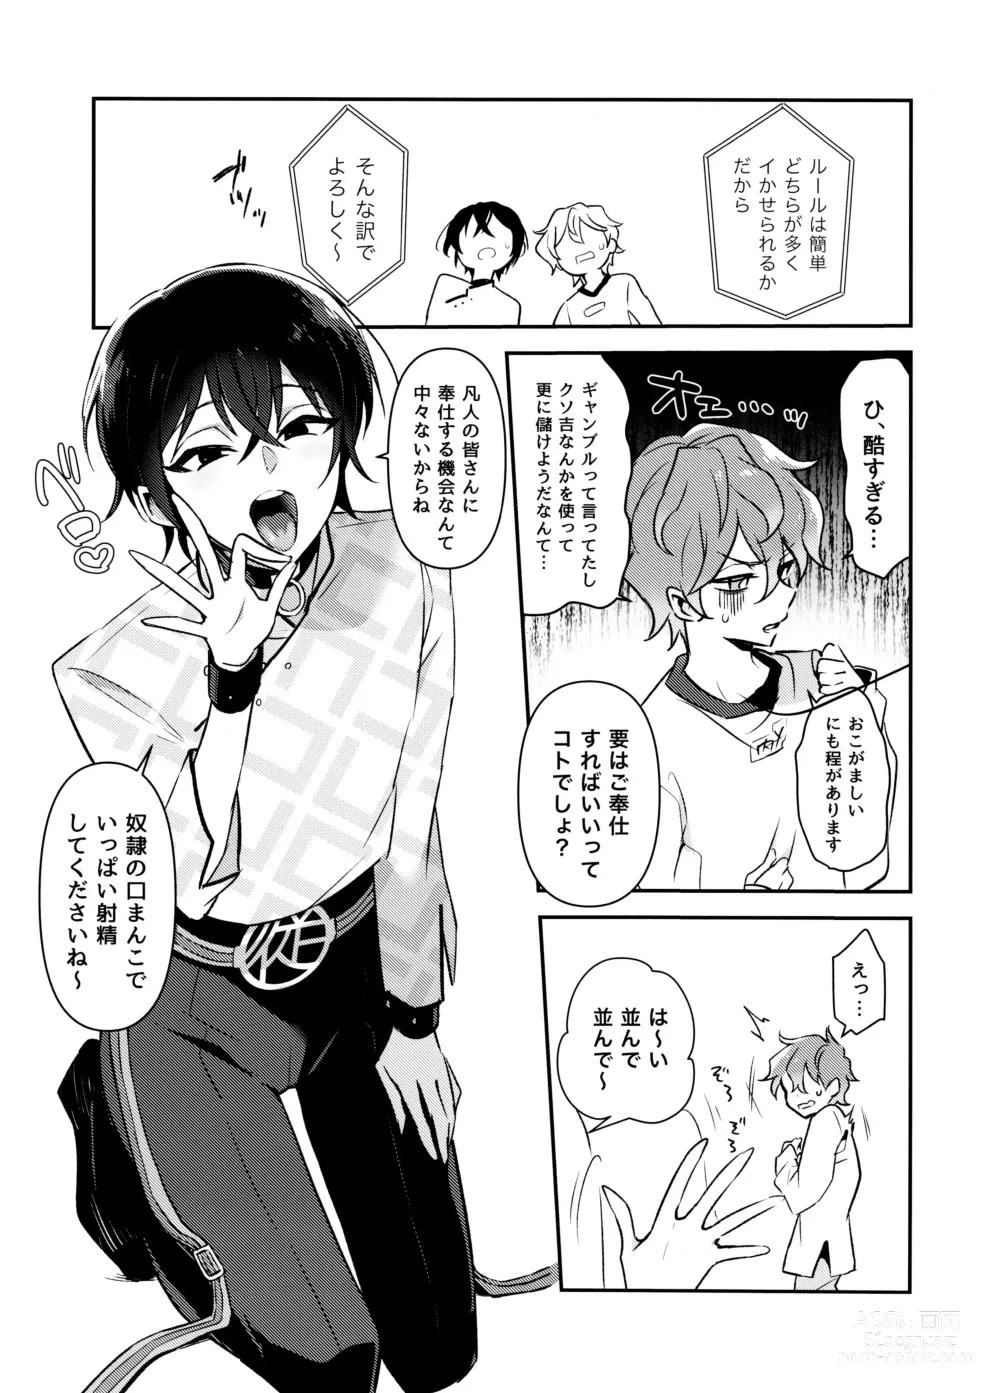 Page 6 of doujinshi Nennemu Fight Gambling